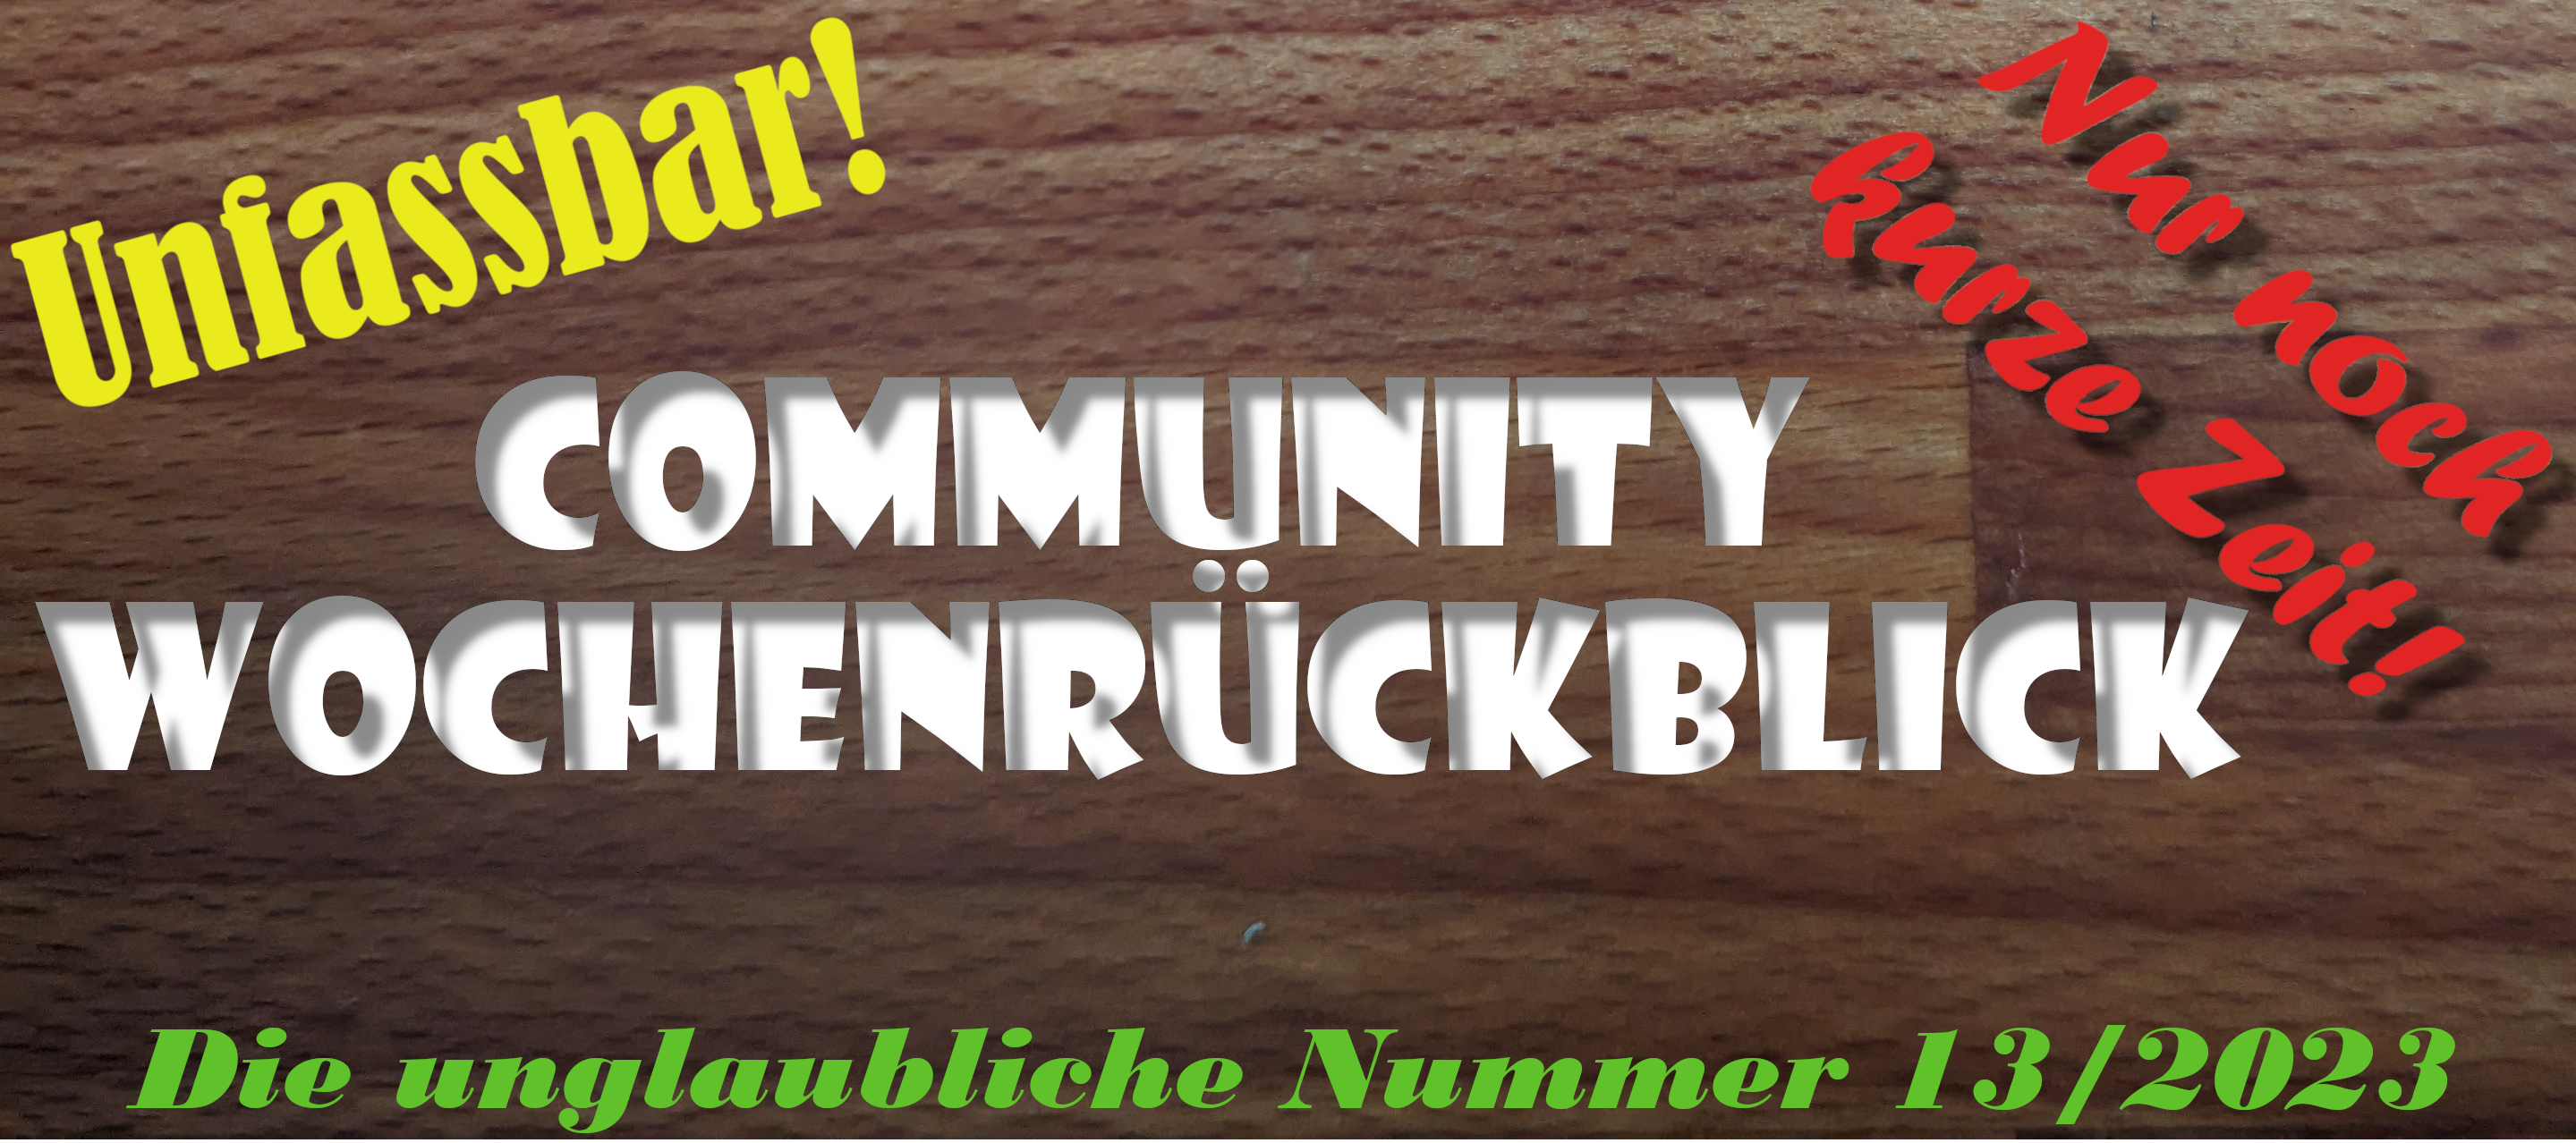 Community Wochenrückblick #13 2023 - Dieser geheime Trick macht euch unwiderstehlich!